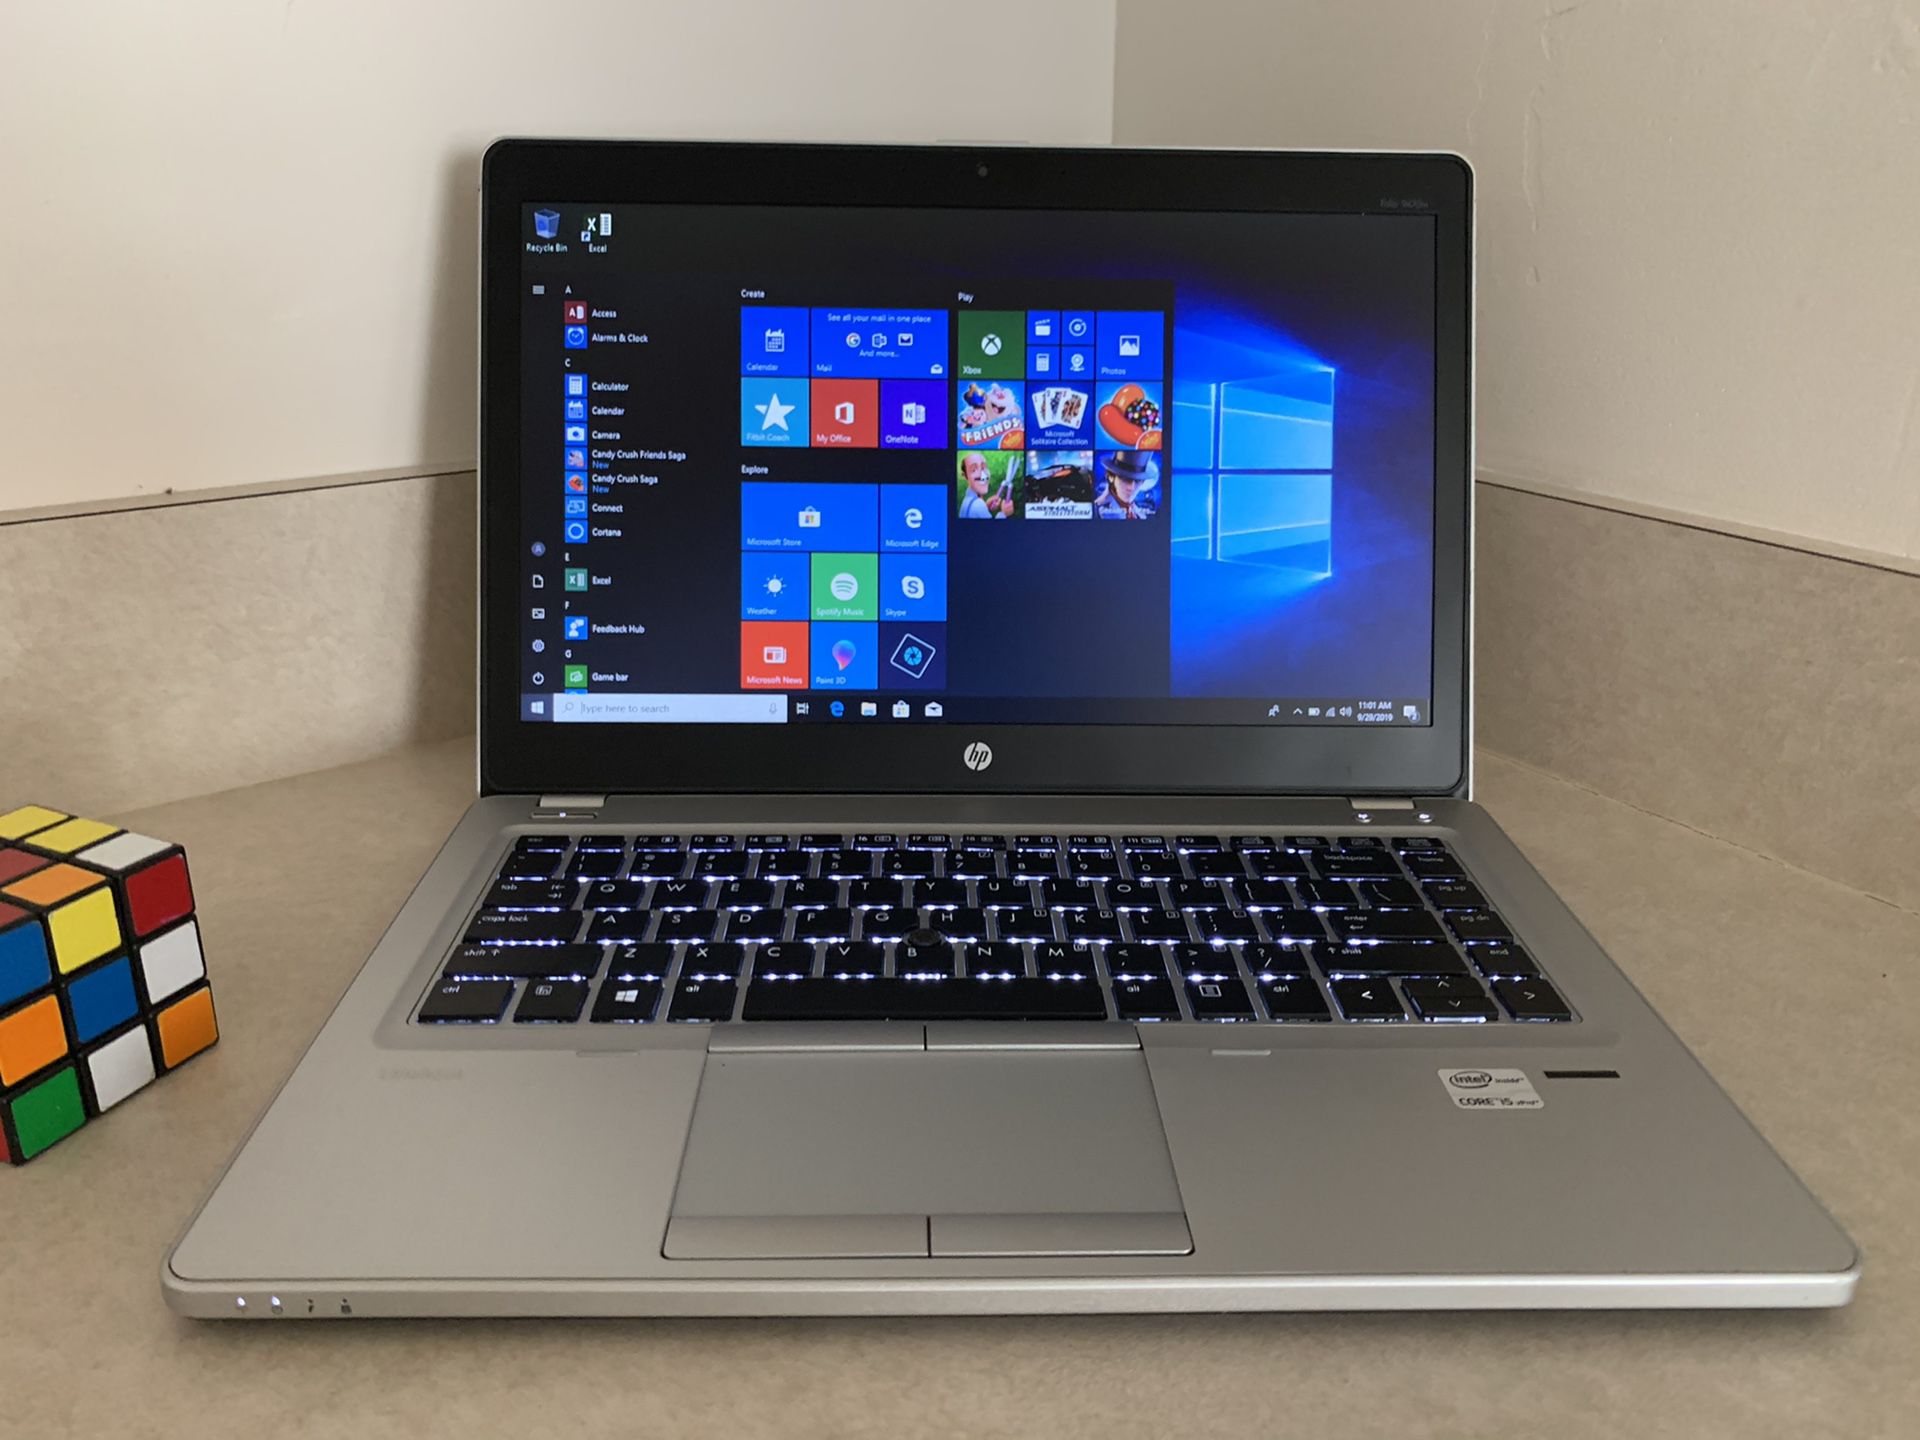 Fully loaded I5 HP Elitebook Laptop (8 GB RAM, 256 GB SSD, Backlit Keyboard, Windows 10Pro etc....)